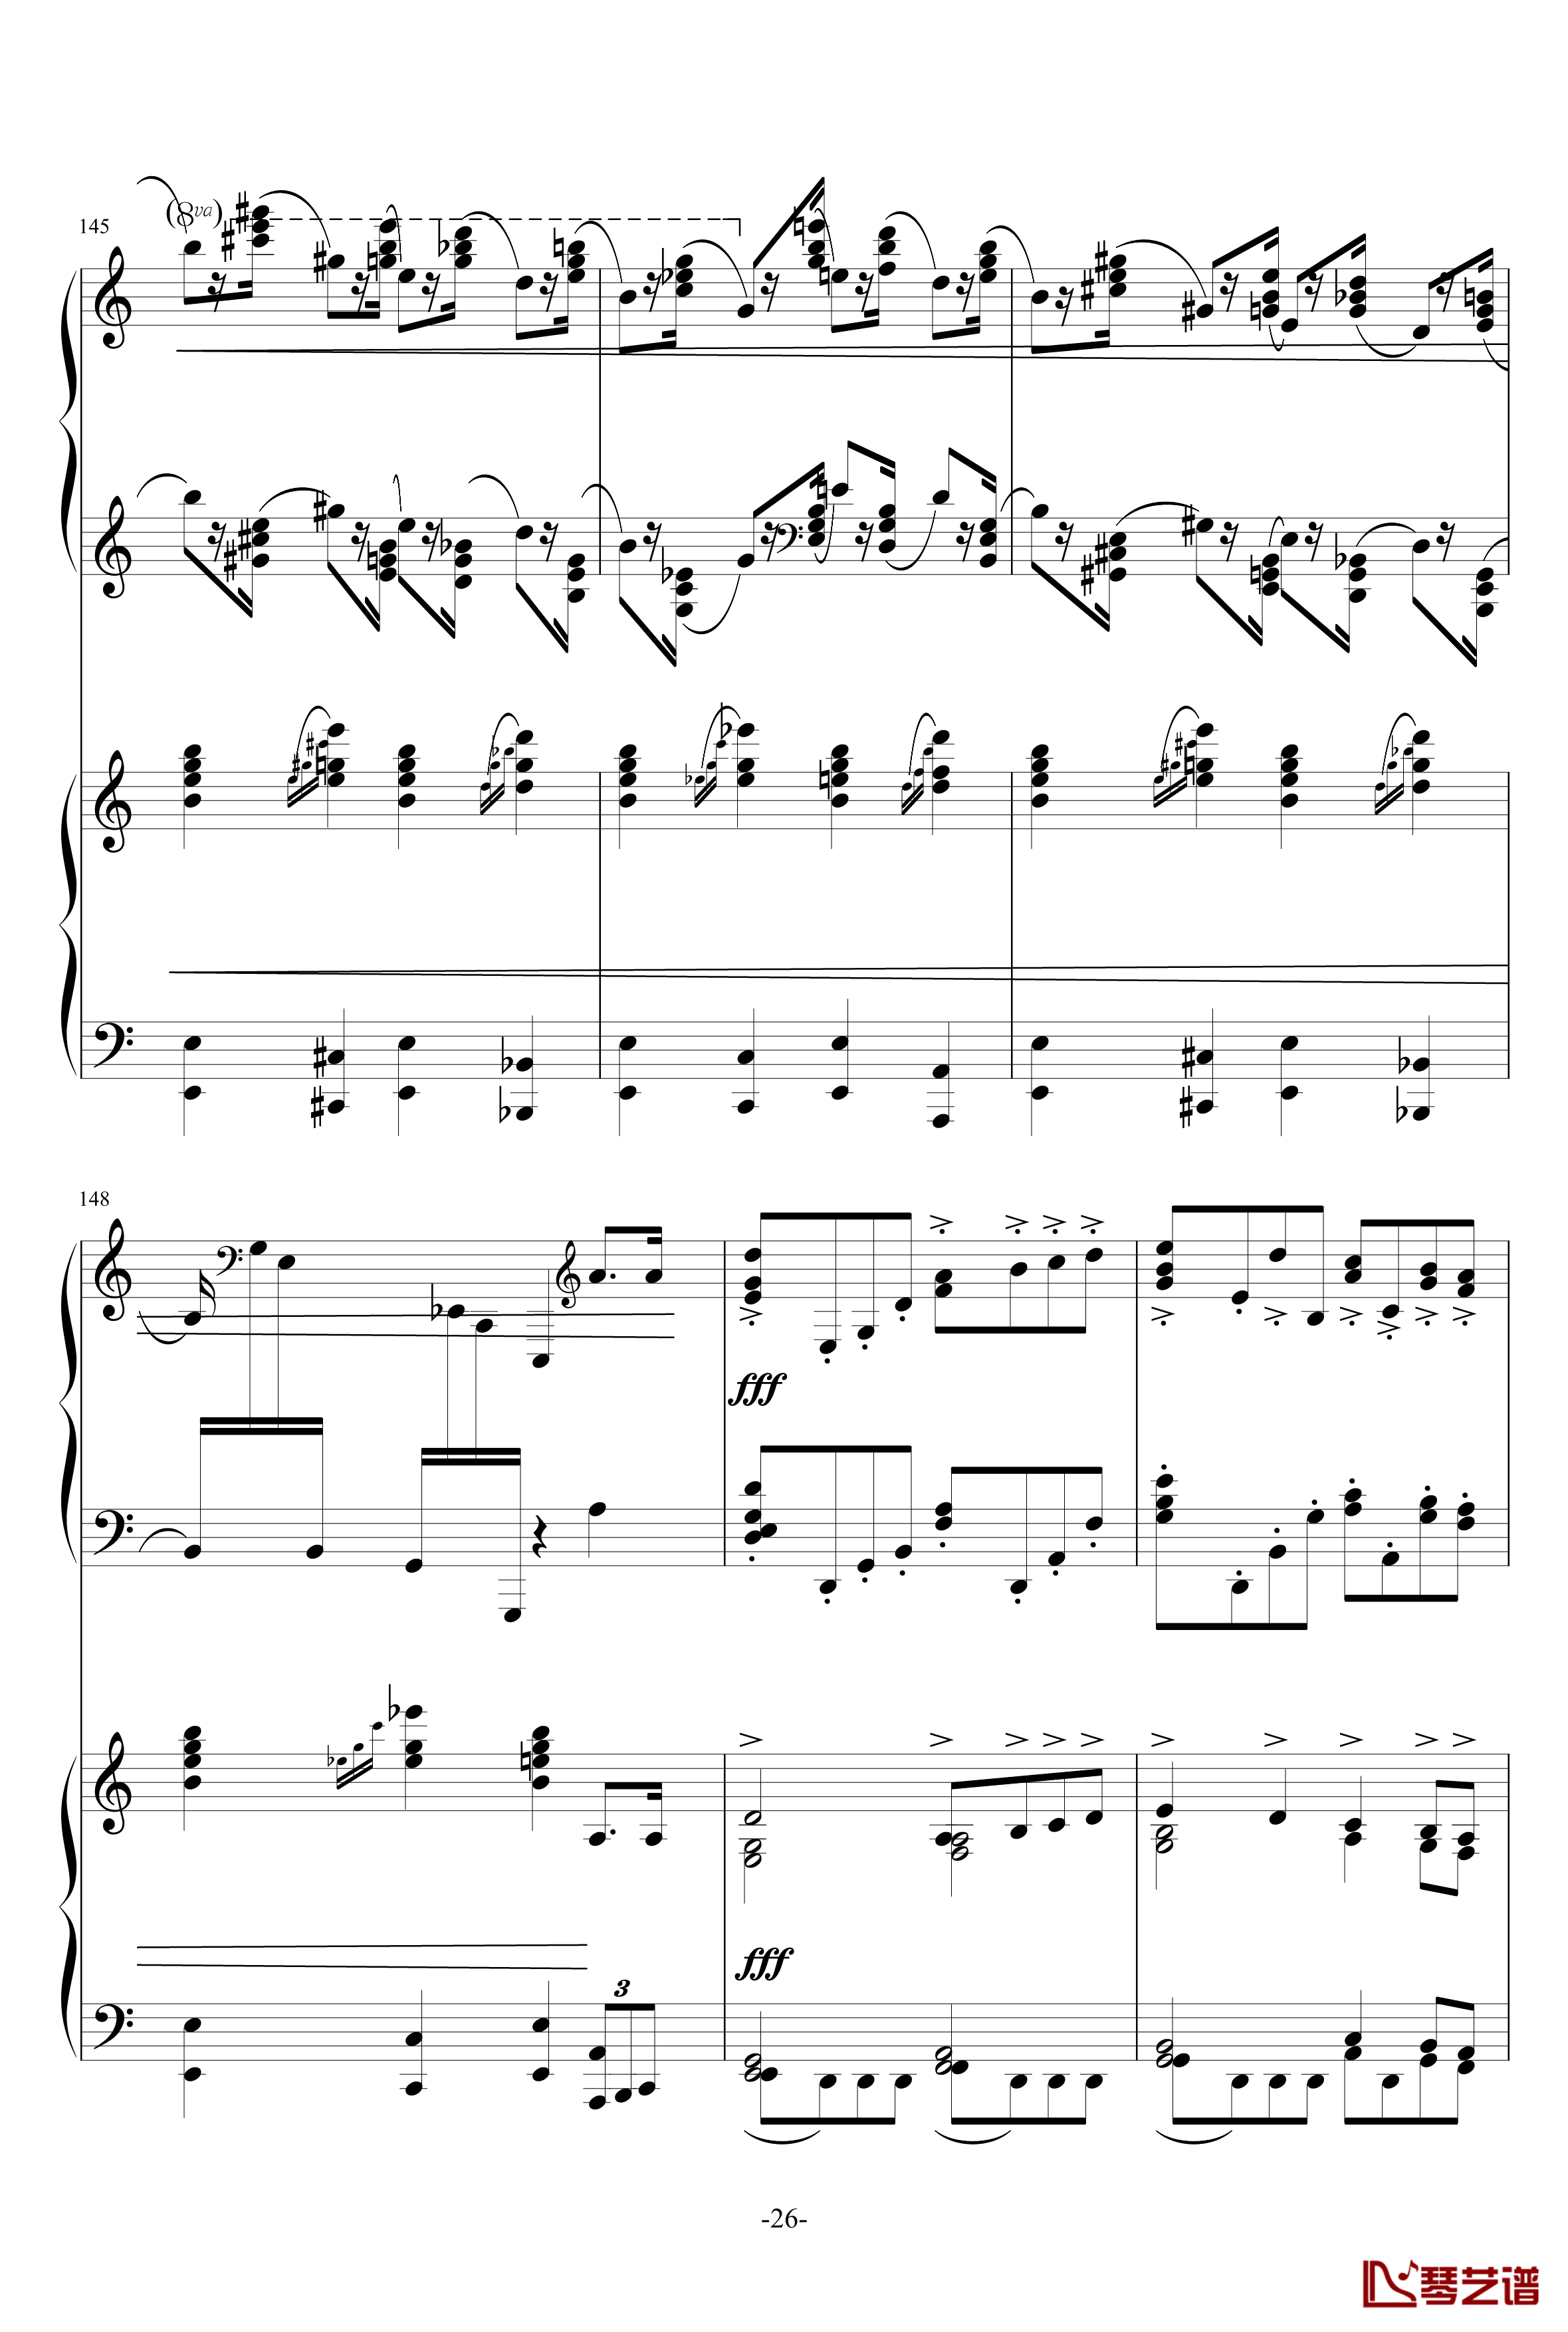 普罗科菲耶夫第三钢琴协奏曲第二乐章钢琴谱26